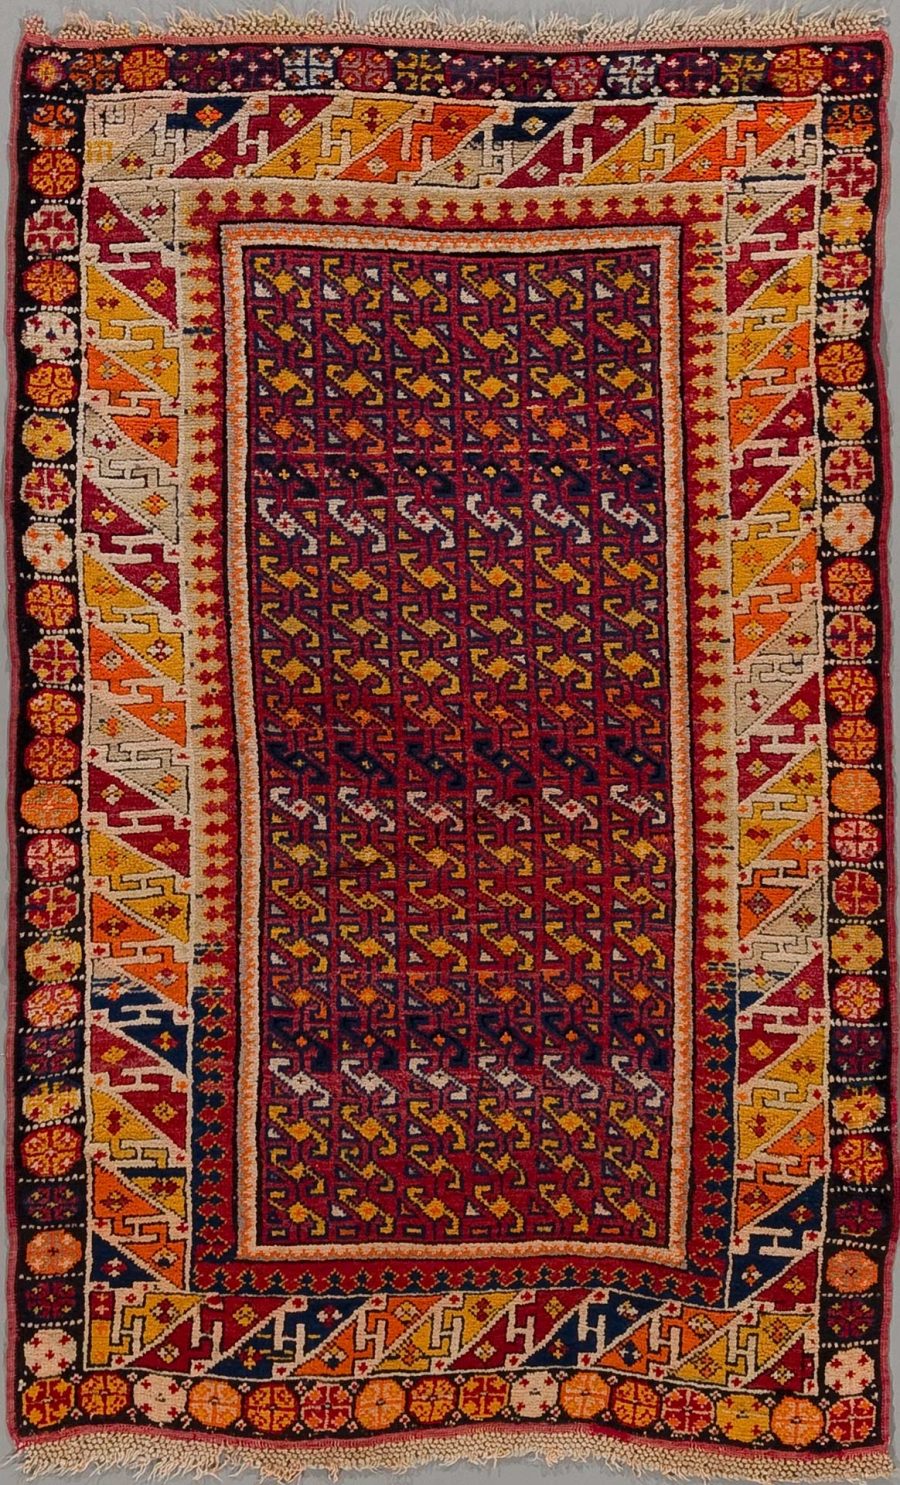 Detailreich gewebter, traditioneller Teppich mit komplexem Muster in vorwiegend roten, blauen und orangefarbenen Tönen, umrandet von einem dekorativen Rahmen mit geometrischen Formen und floralen Motiven.